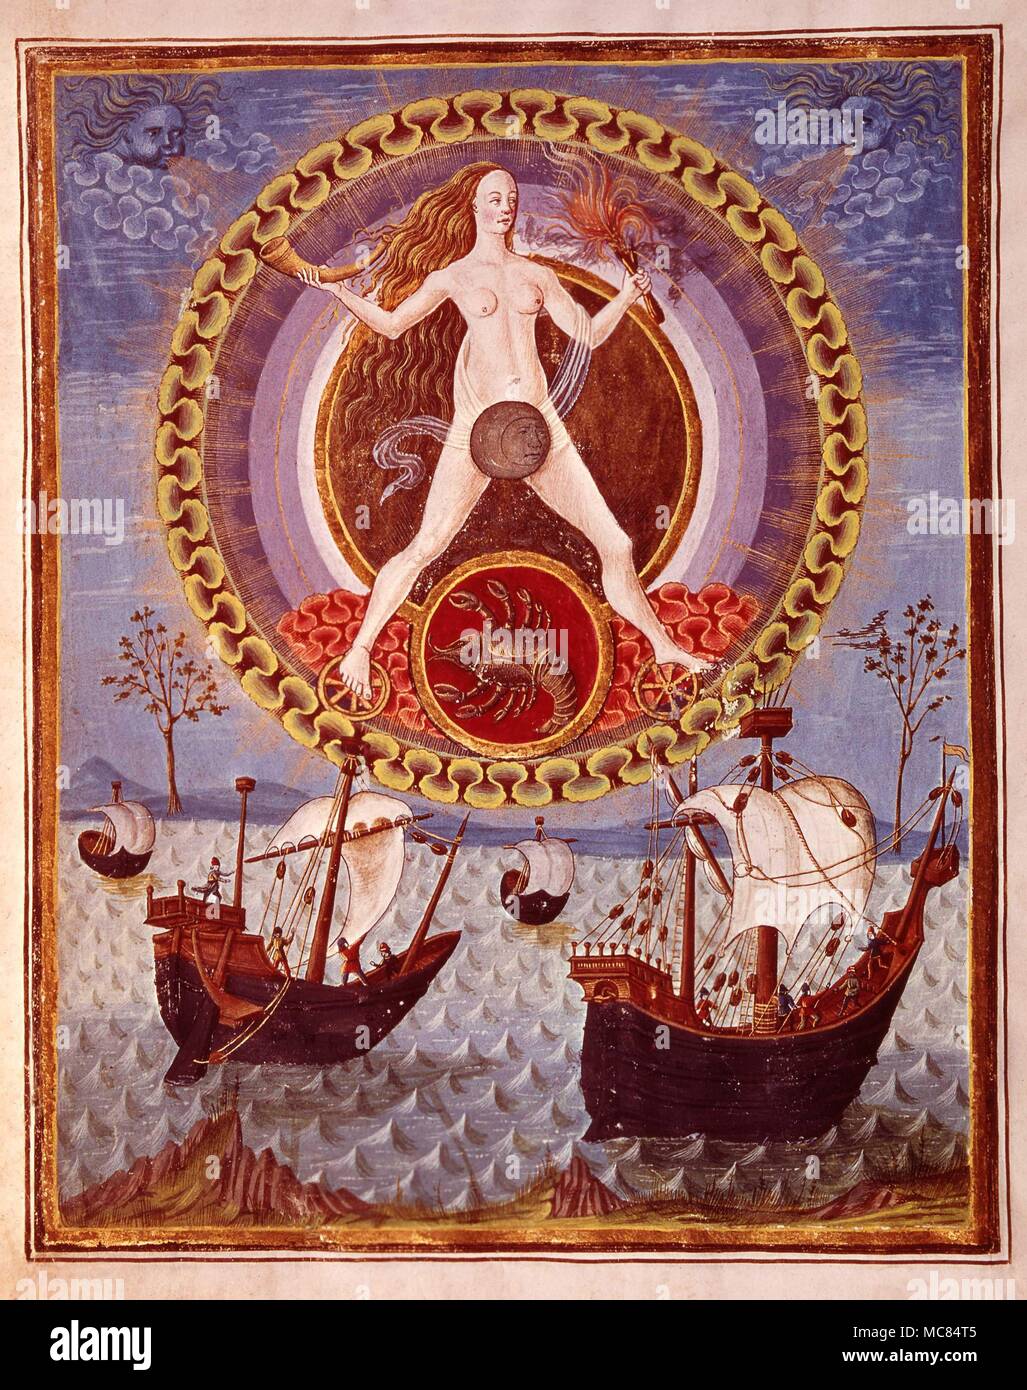 La Luna y sus hijos, con el signo de cáncer en el cual ella tiene la regla. A partir de una copia de la iluminación en el siglo XV 'phaera' en el babero. Estense, Módena. Foto de stock